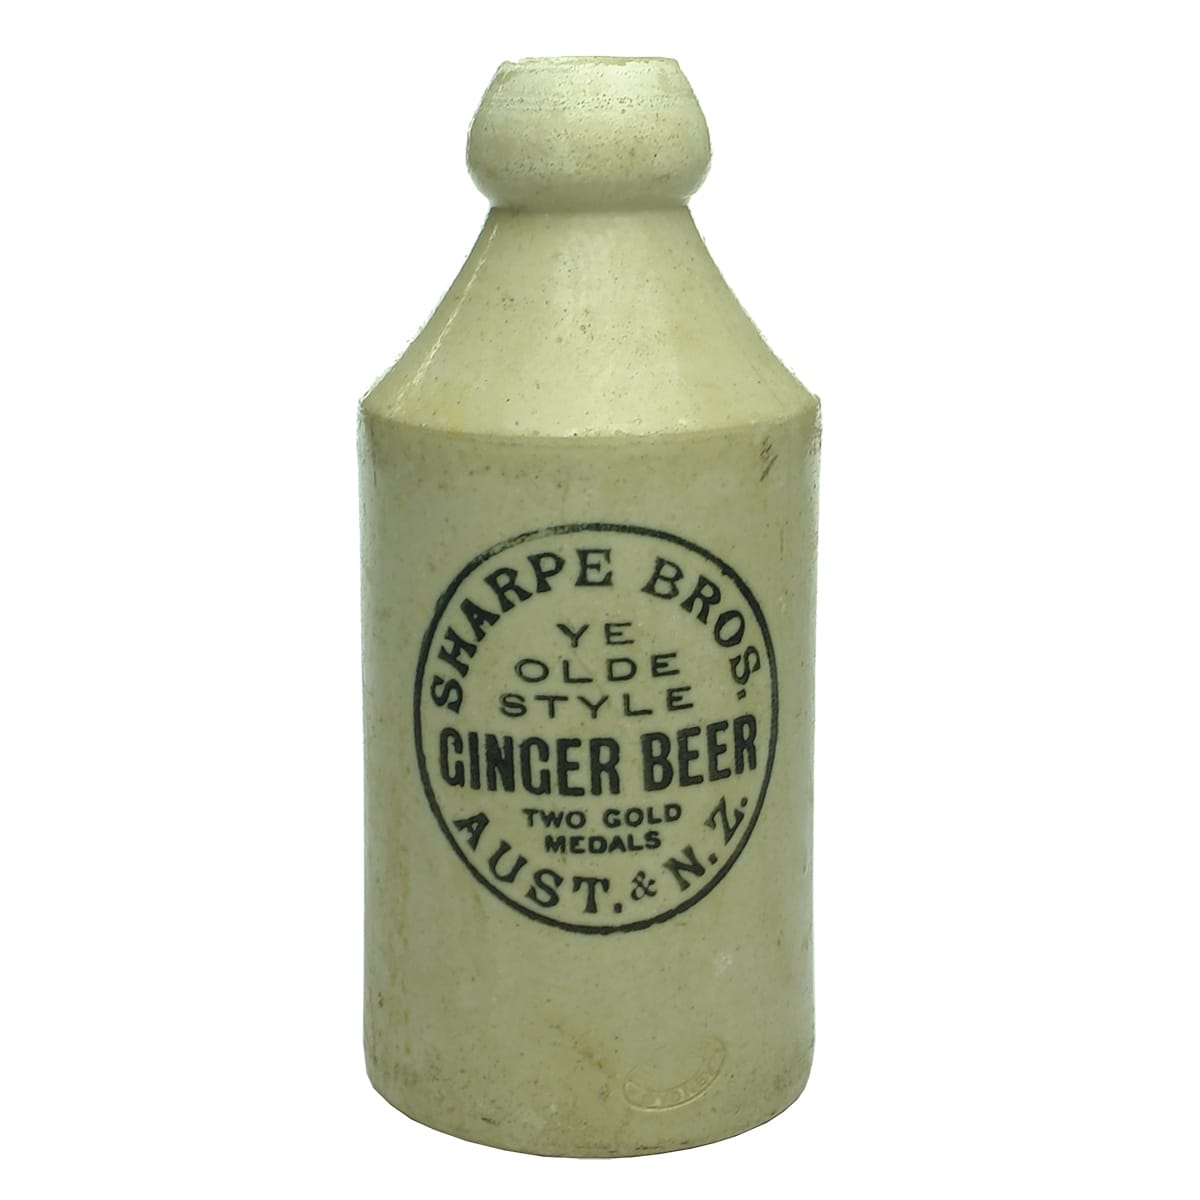 Ginger Beer. Sharpe Bros. All White. Internal Thread. Dump.